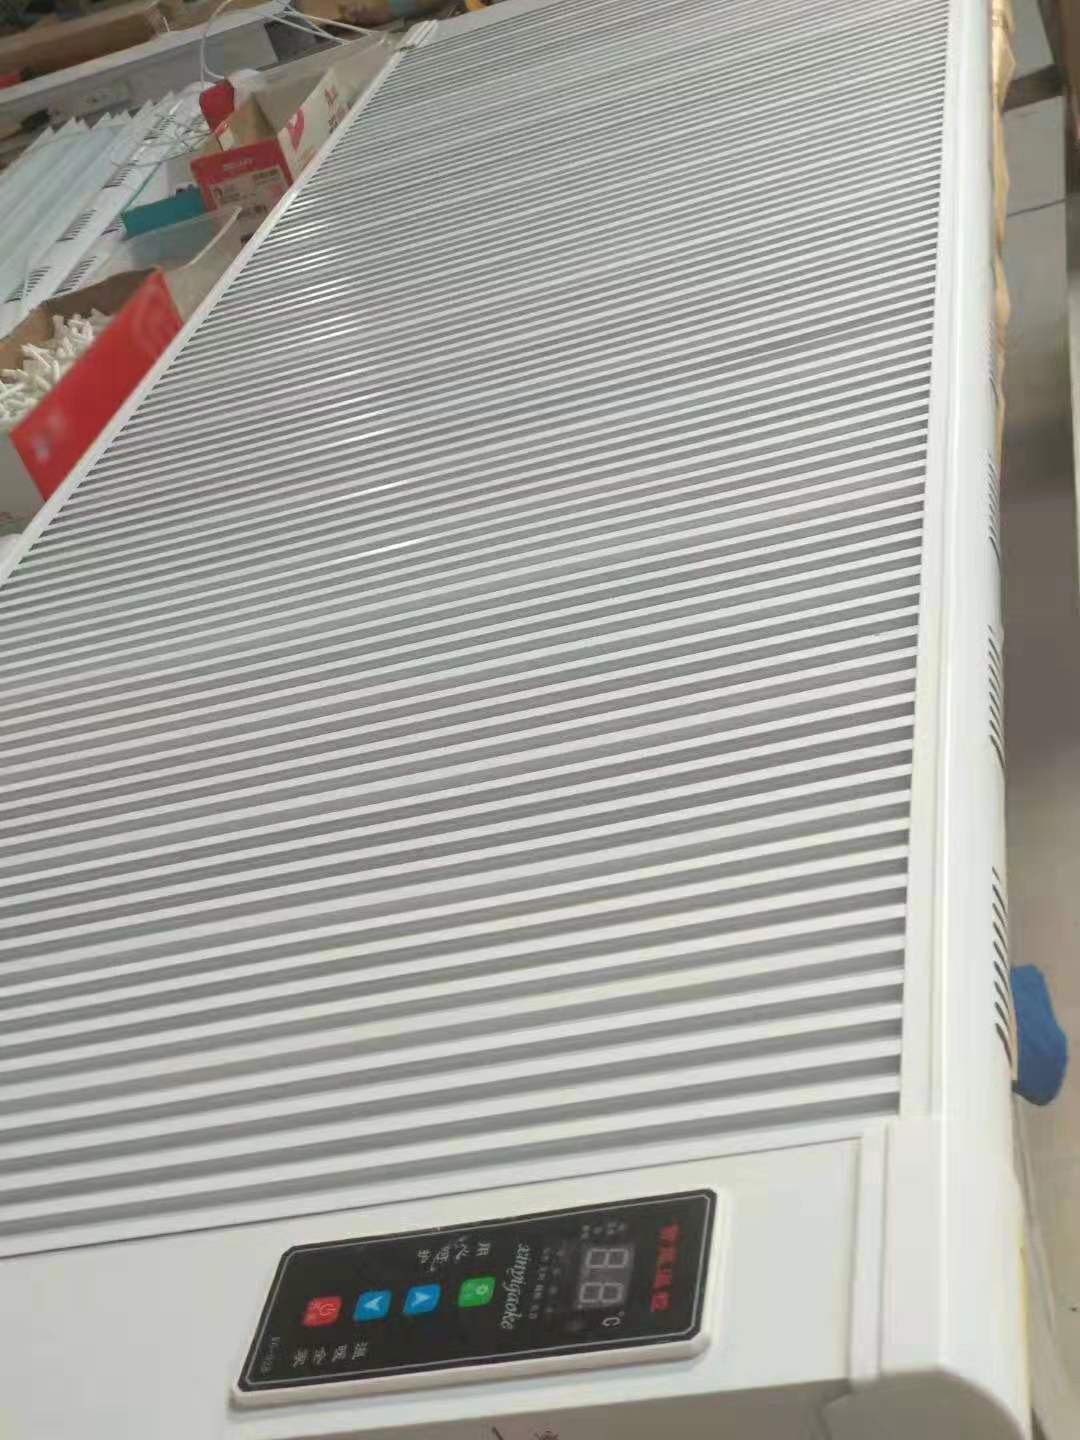 批发 远红外发热 厂家直销 家庭取暖气 2019新款碳纤维电暖器4